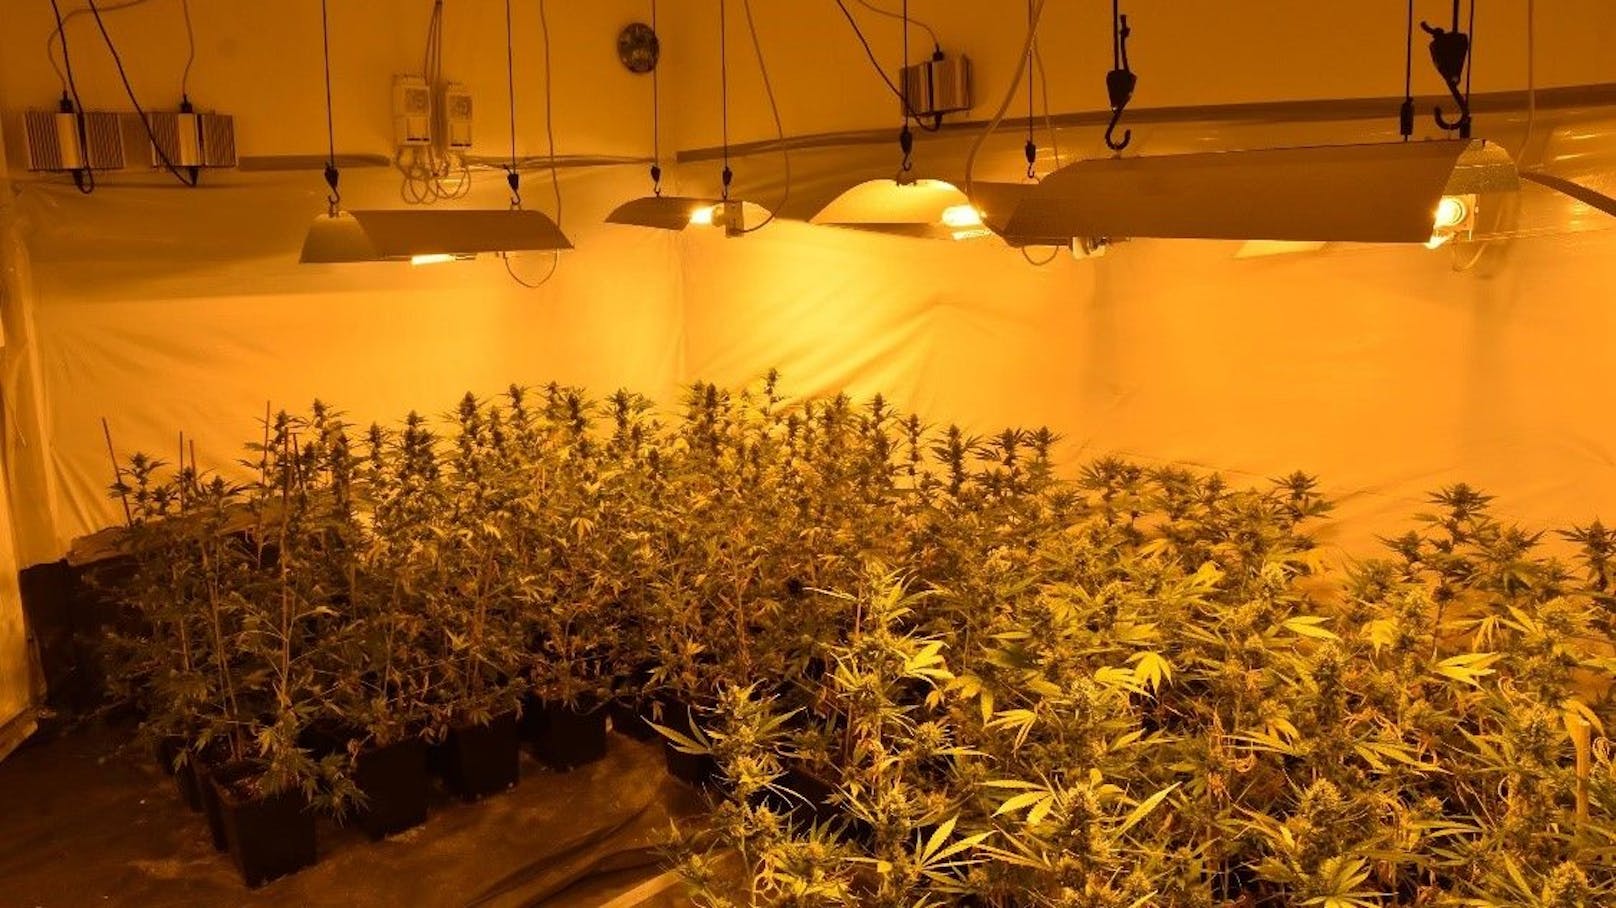 In der Wohnung wurden insgesamt 222 Cannabispflanzen gefunden.